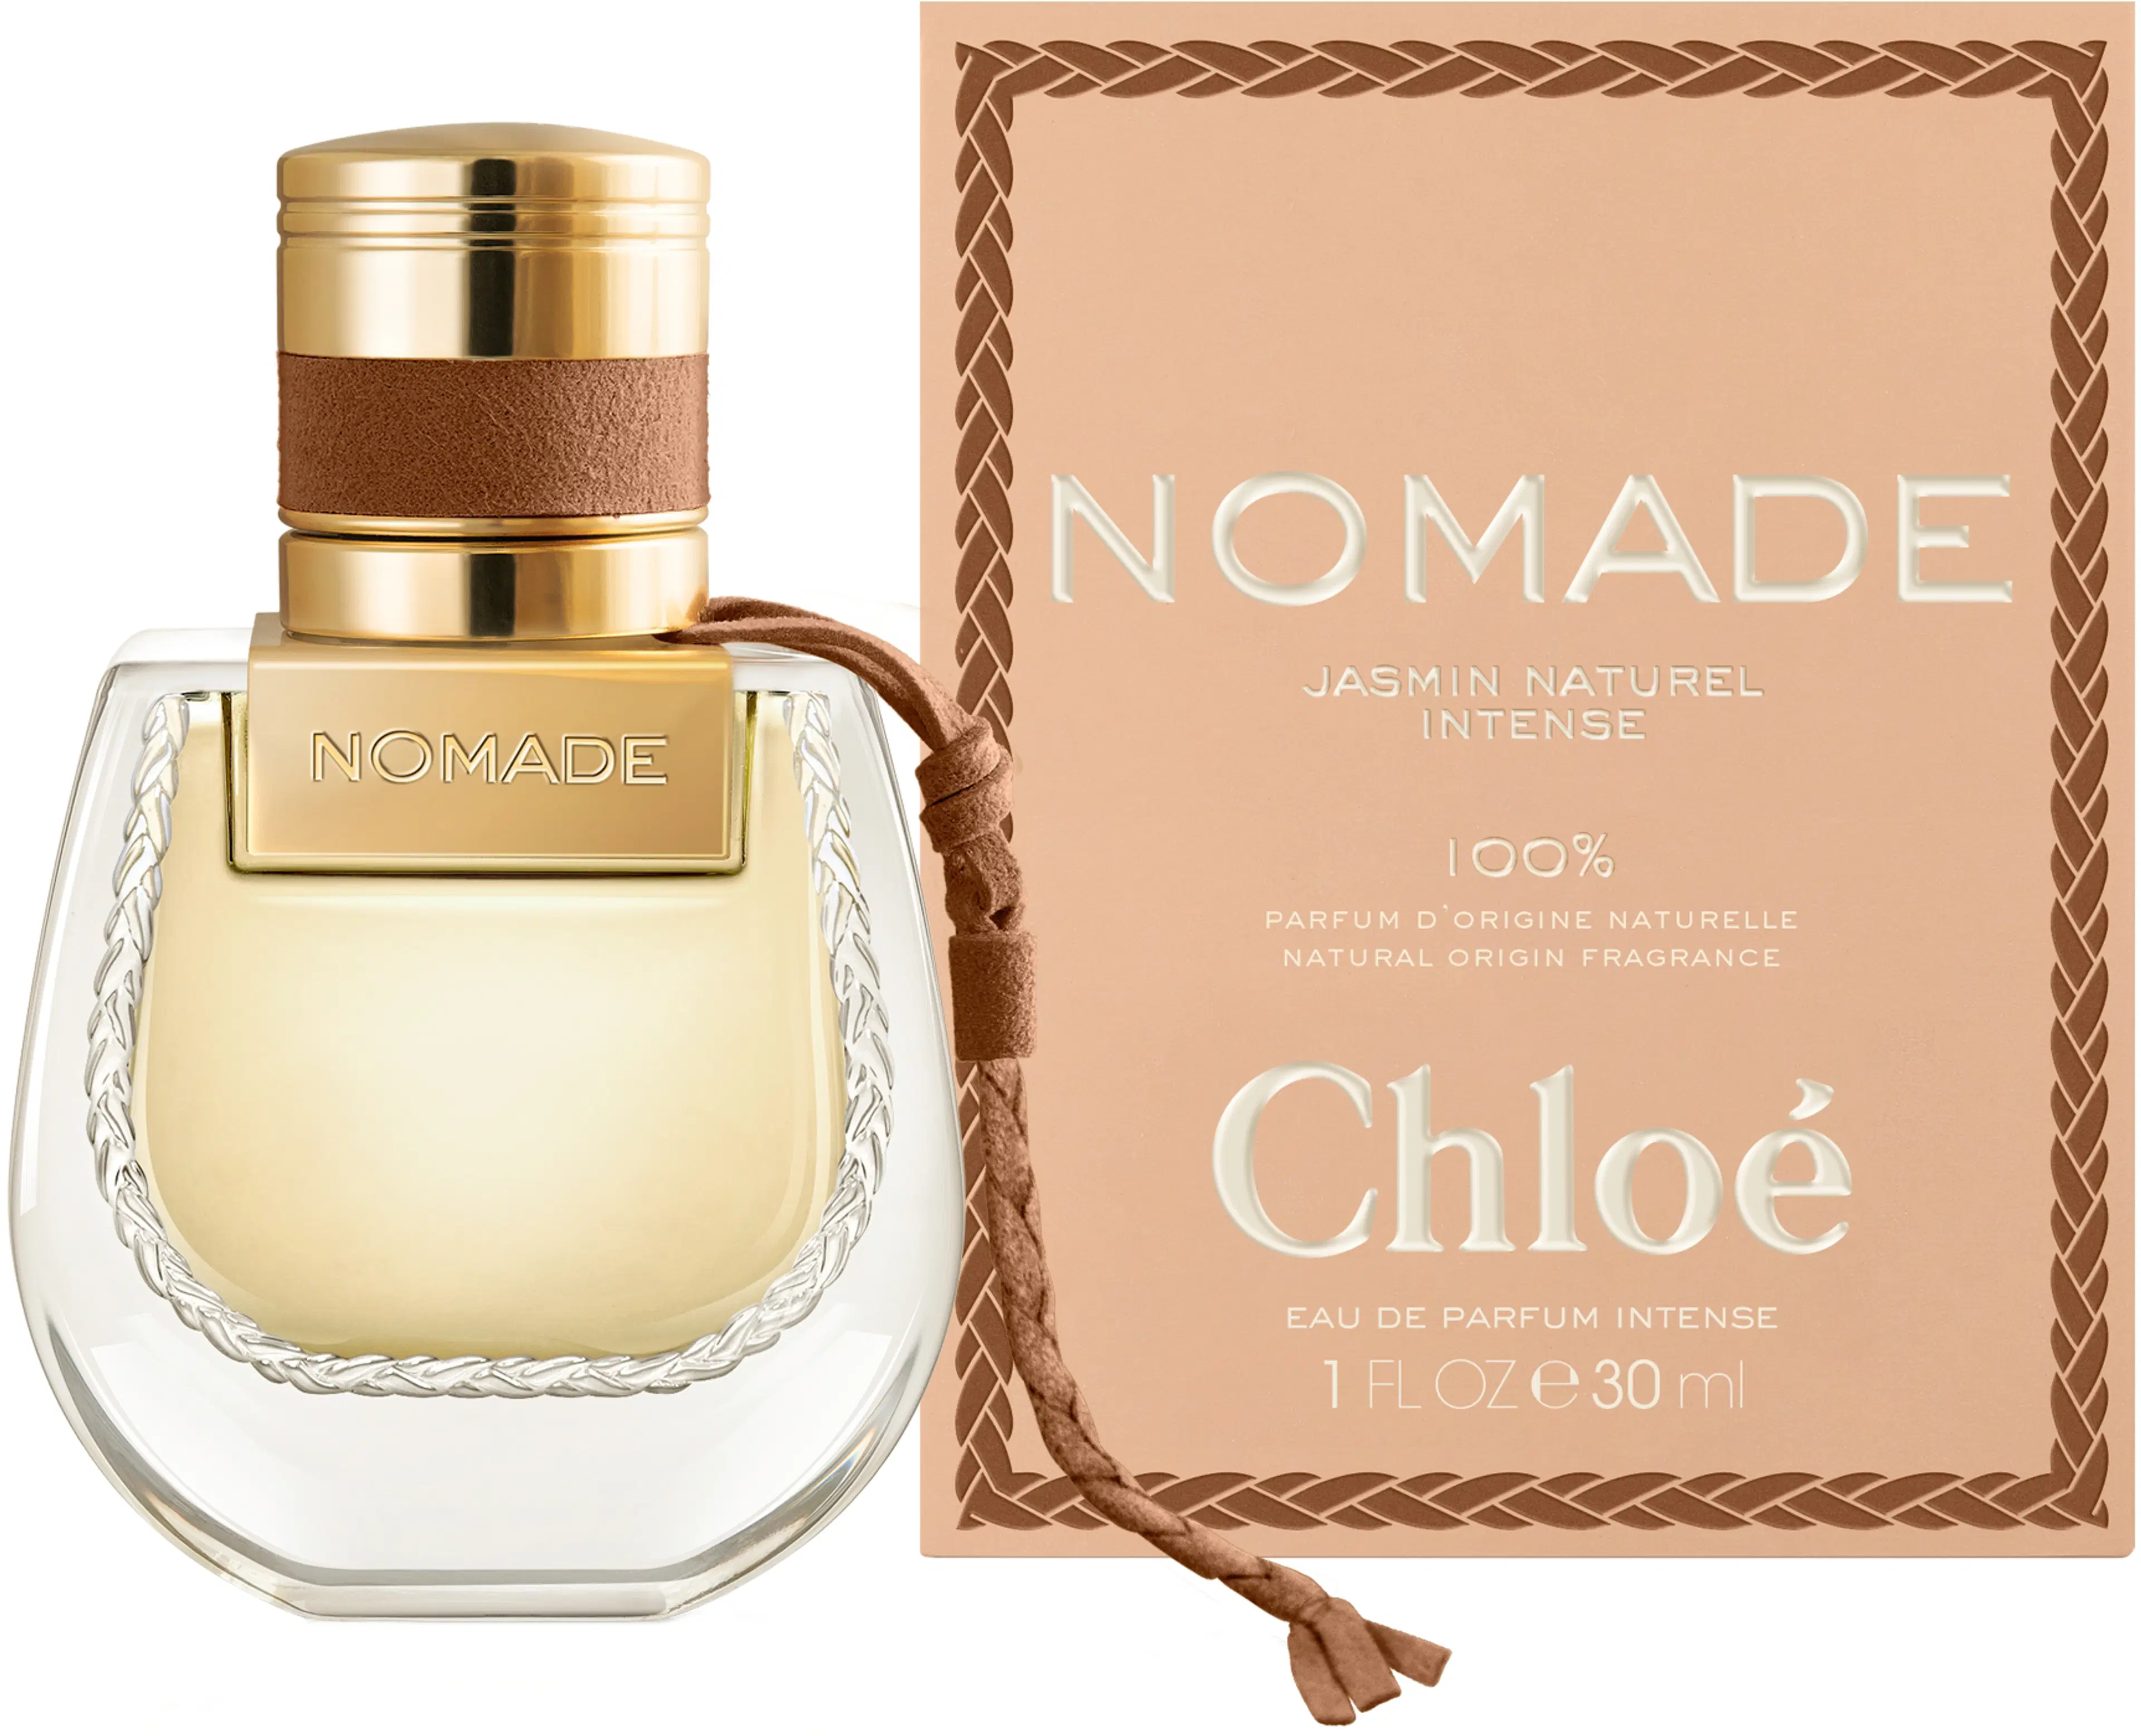 Chloé Nomade Jasmin Naturelle Edp Intense tuoksu 30 ml